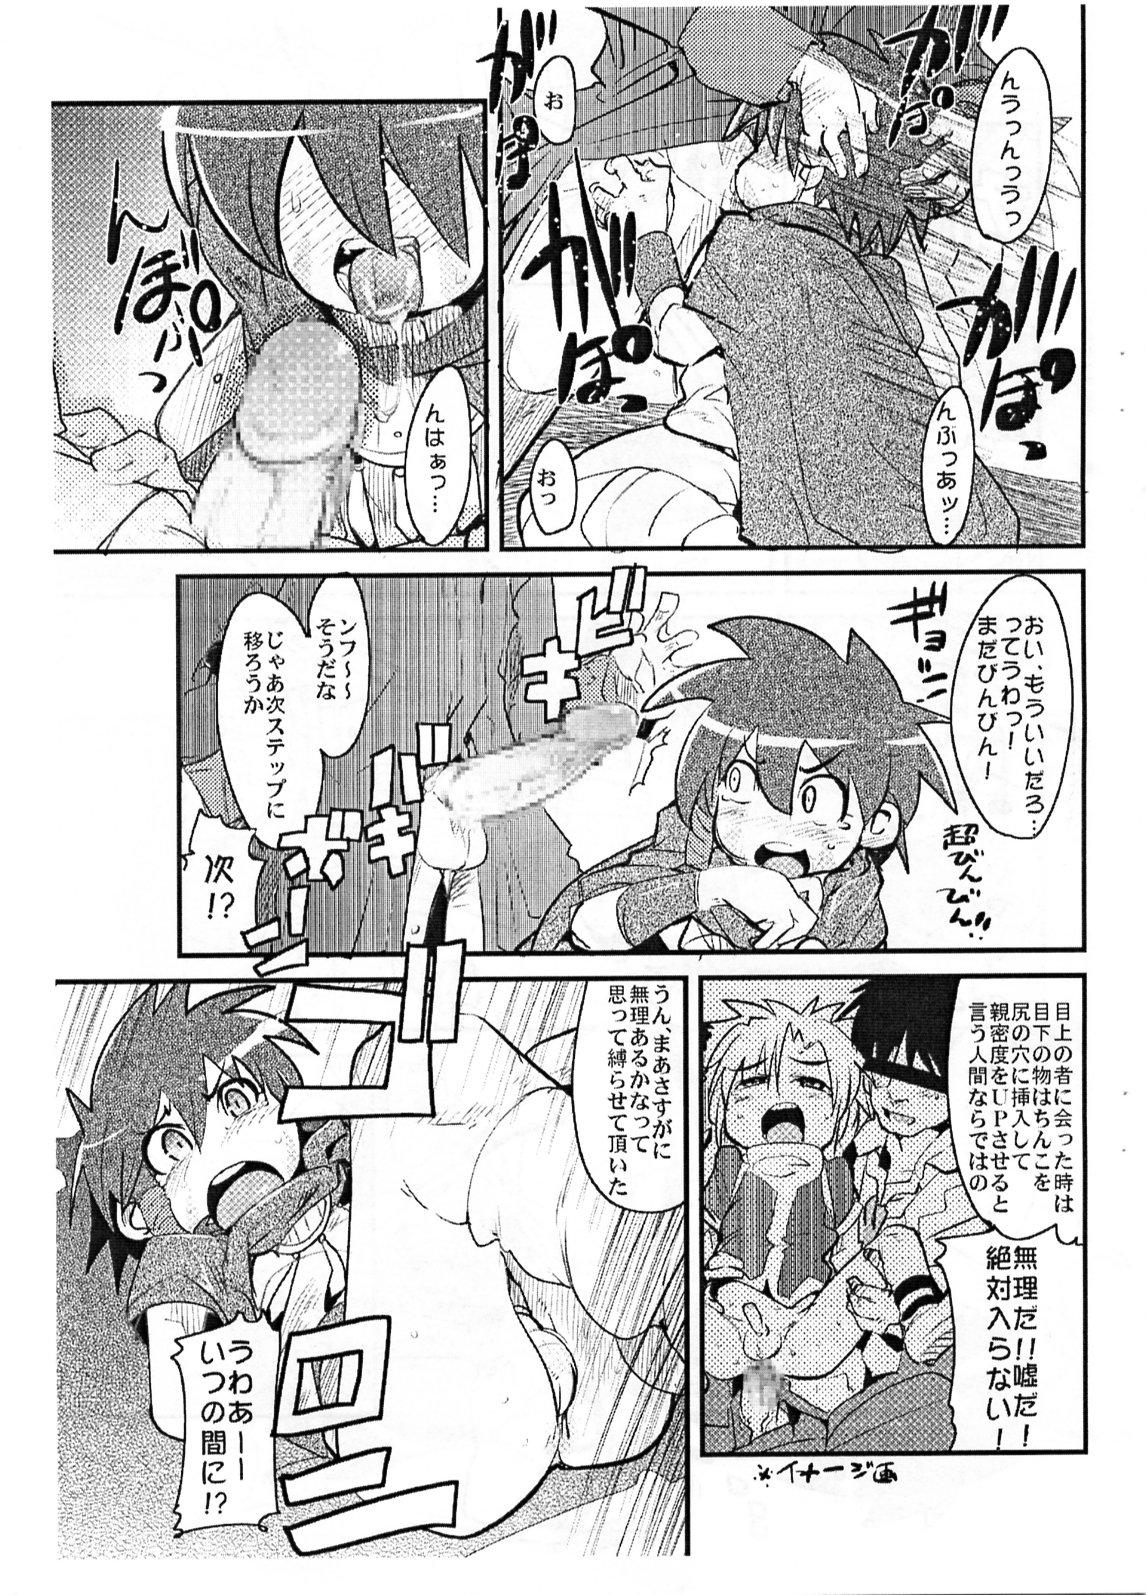 Foot Fetish Yaseiji ni iroiro oshieru hon nano da - Digimon savers Petite Teenager - Page 6